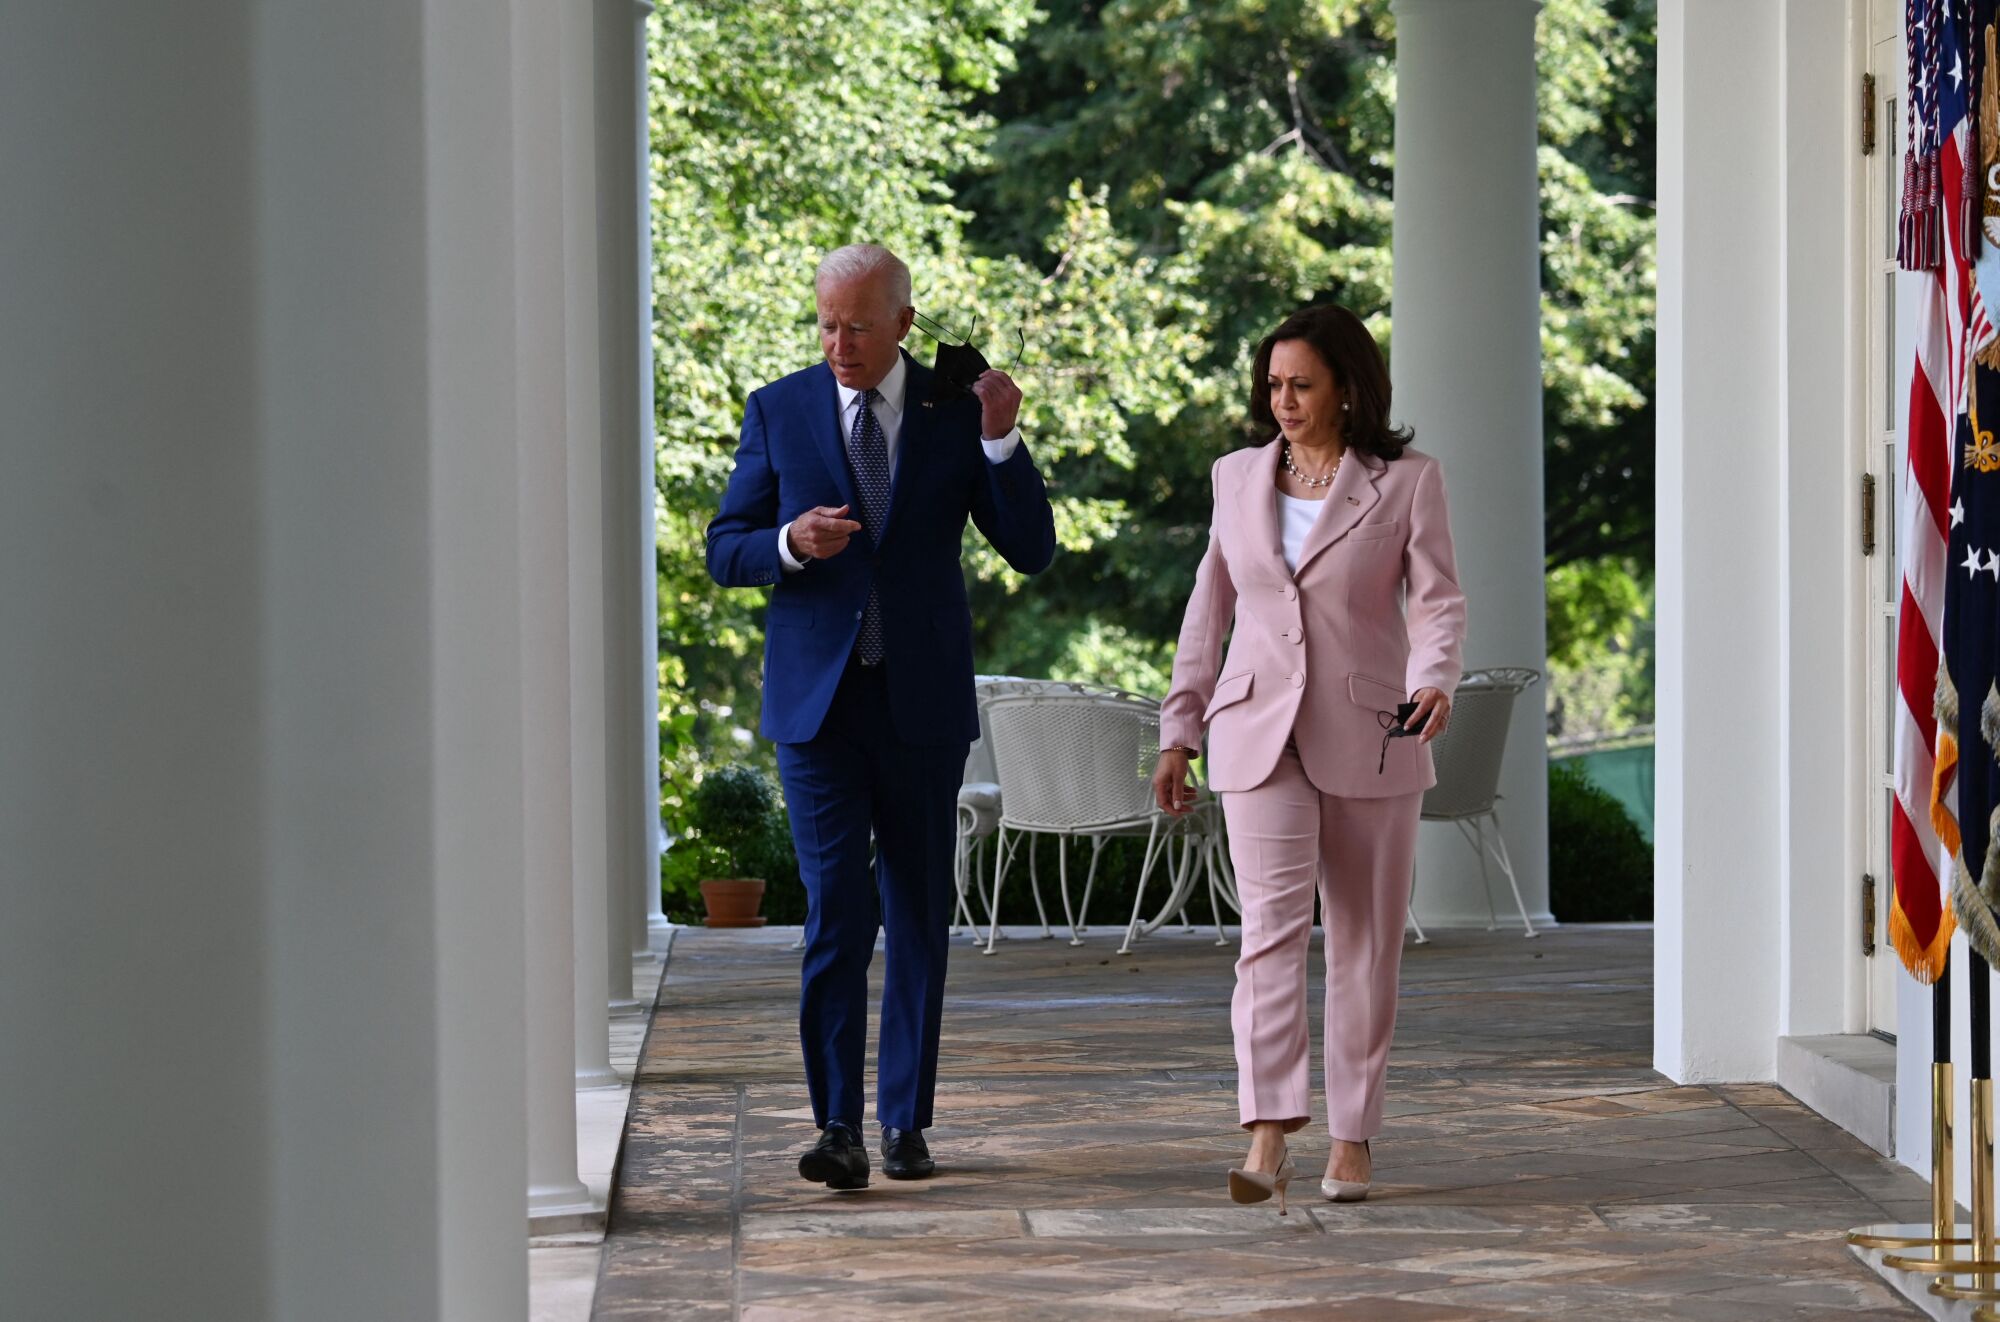 President Biden and Vice President Kamala Harris arrive at the White House Rose Garden.